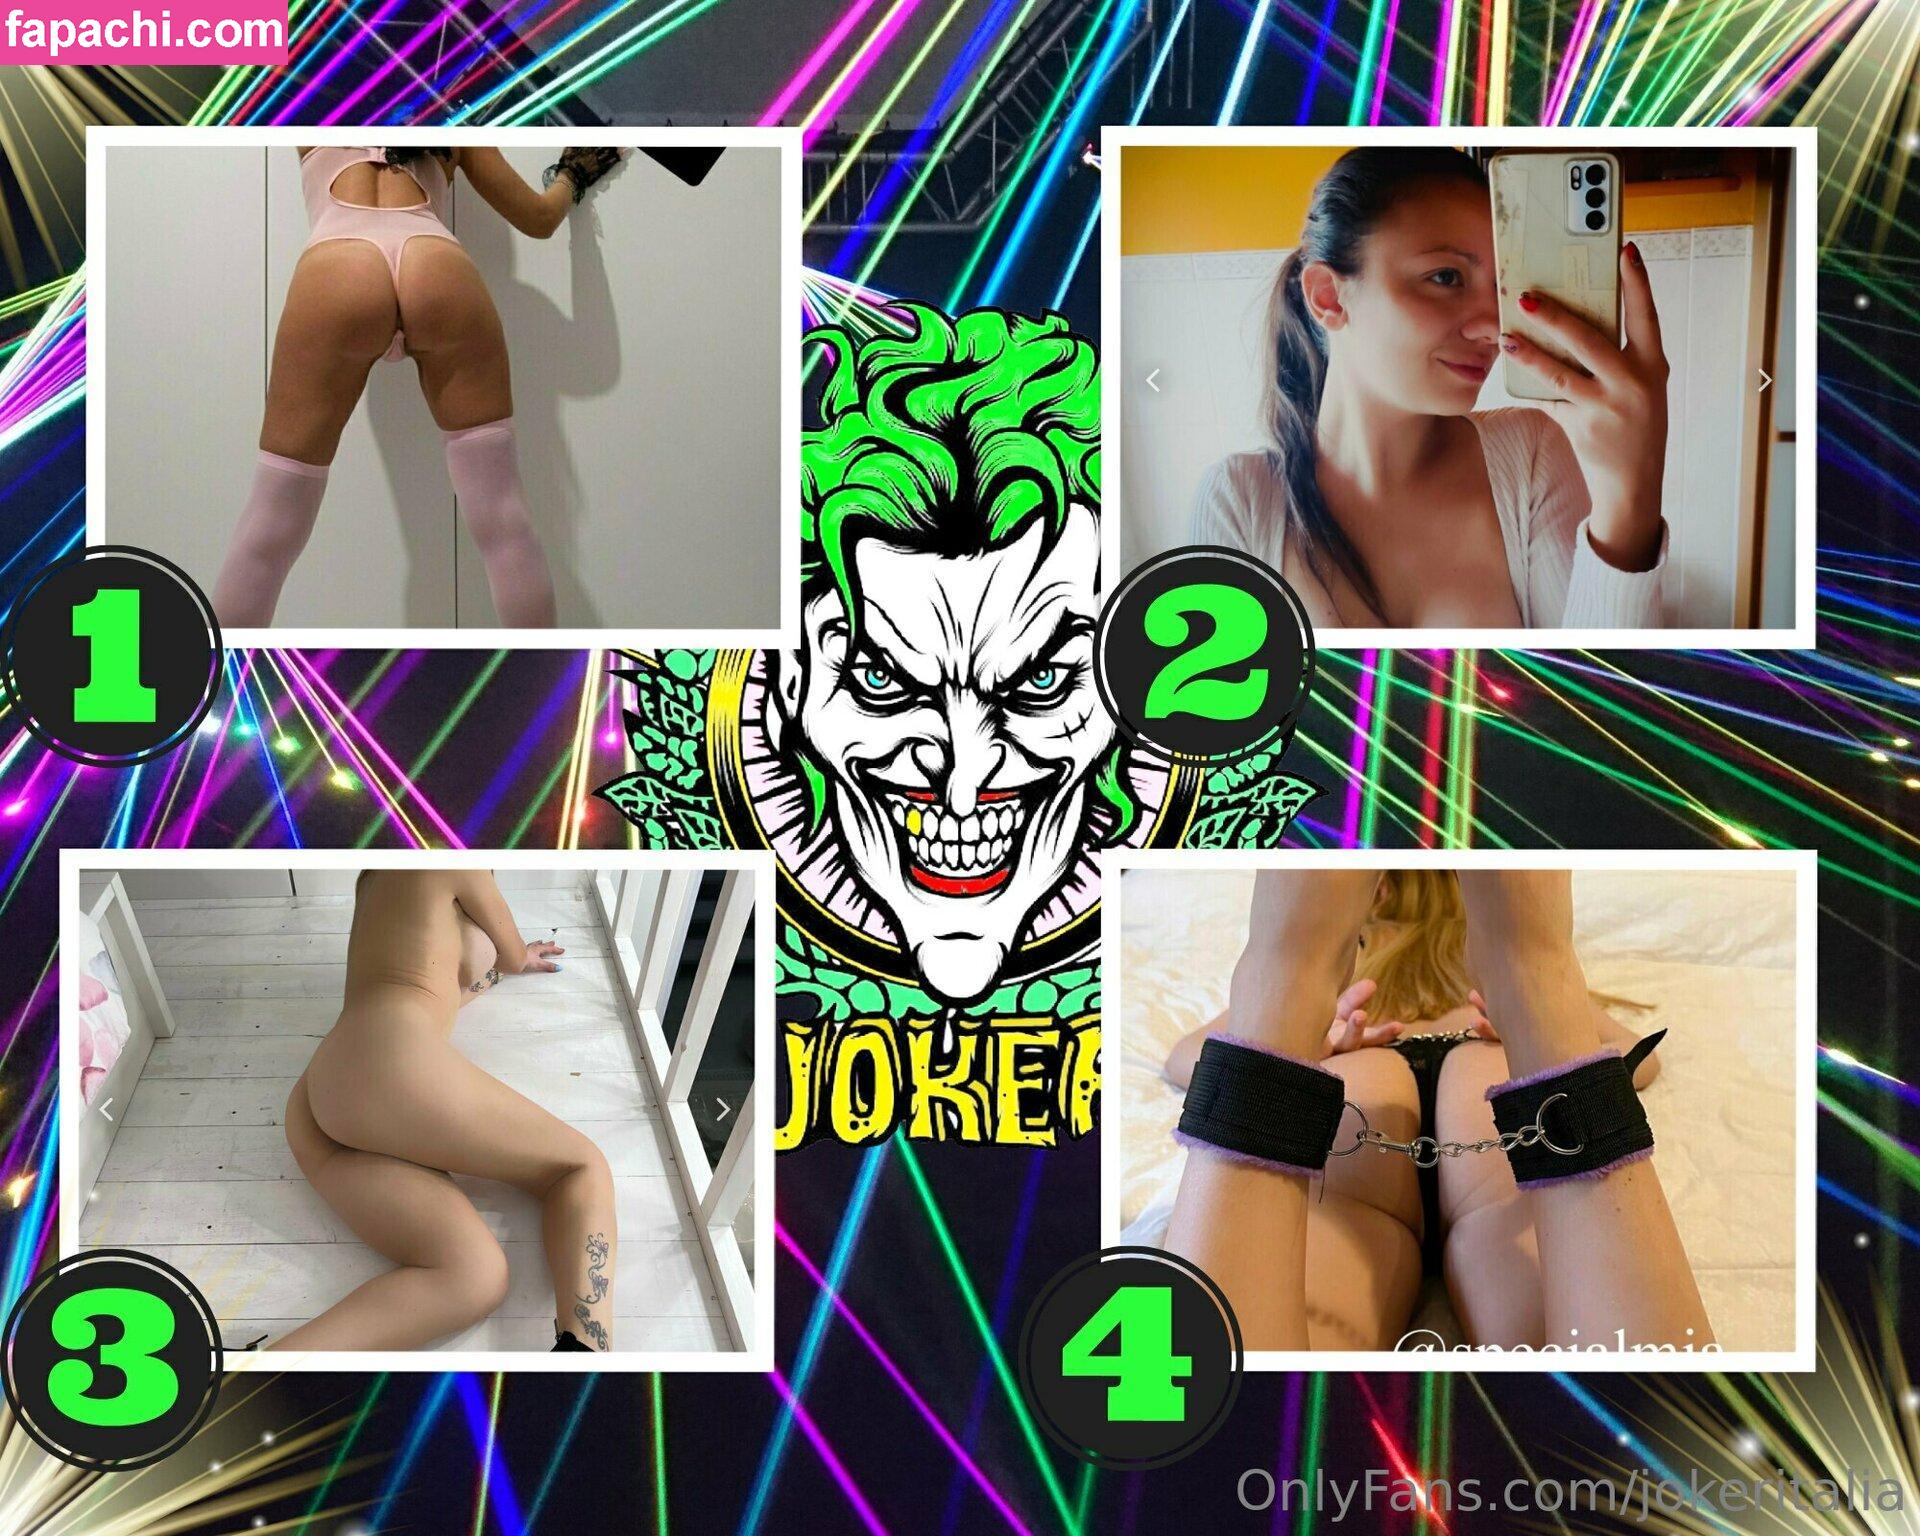 jokeritalia / jokeritalia_ofc leaked nude photo #0409 from OnlyFans/Patreon